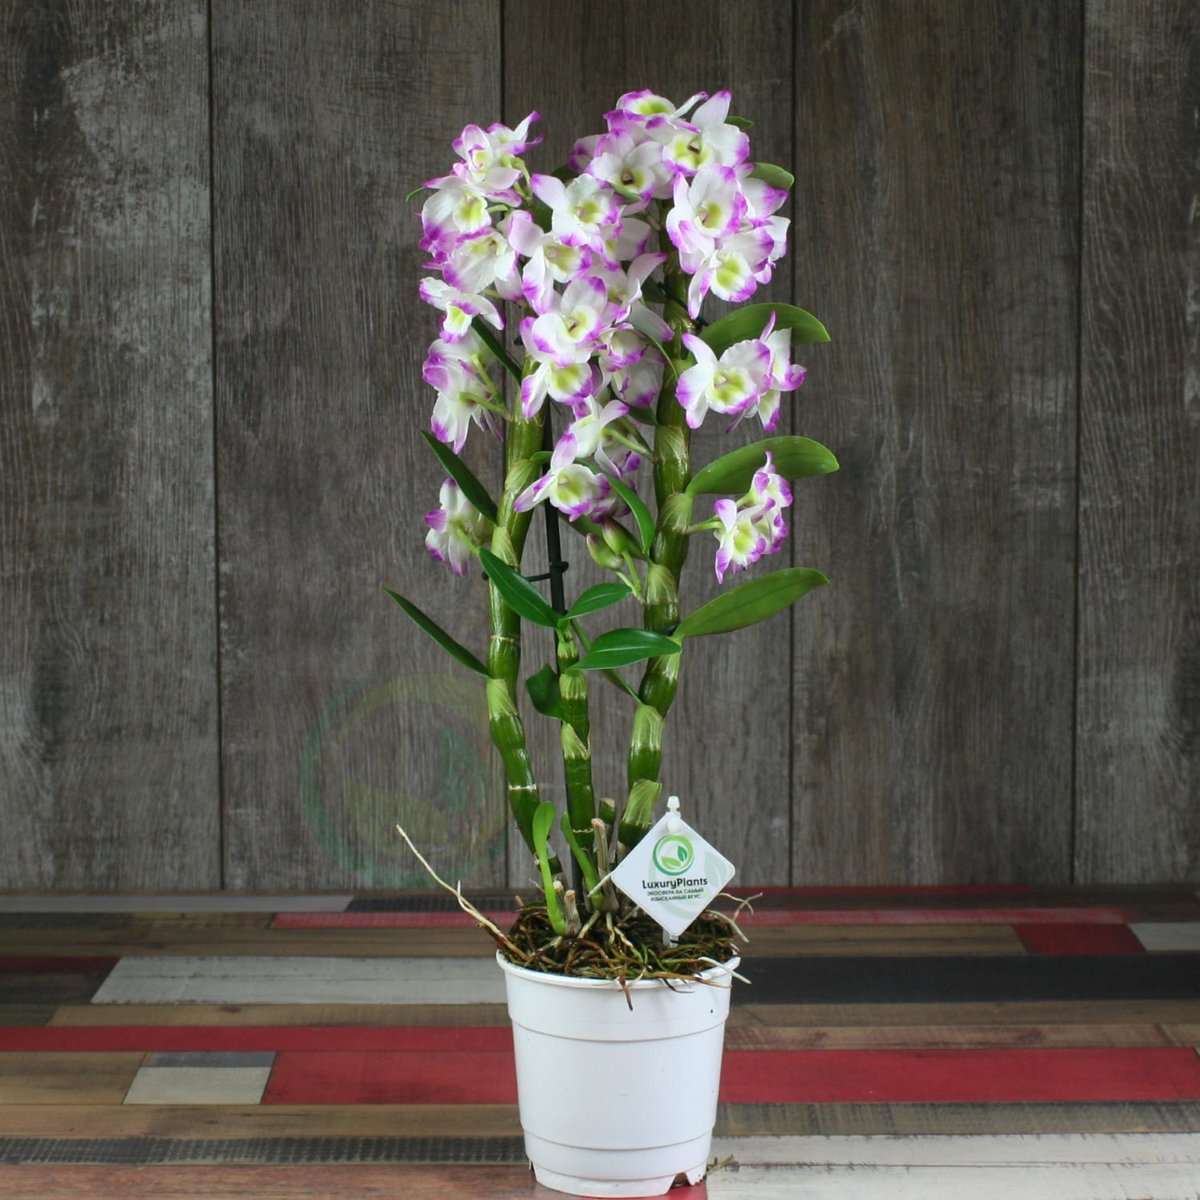 разновидность орхидей фото и название дендробиум